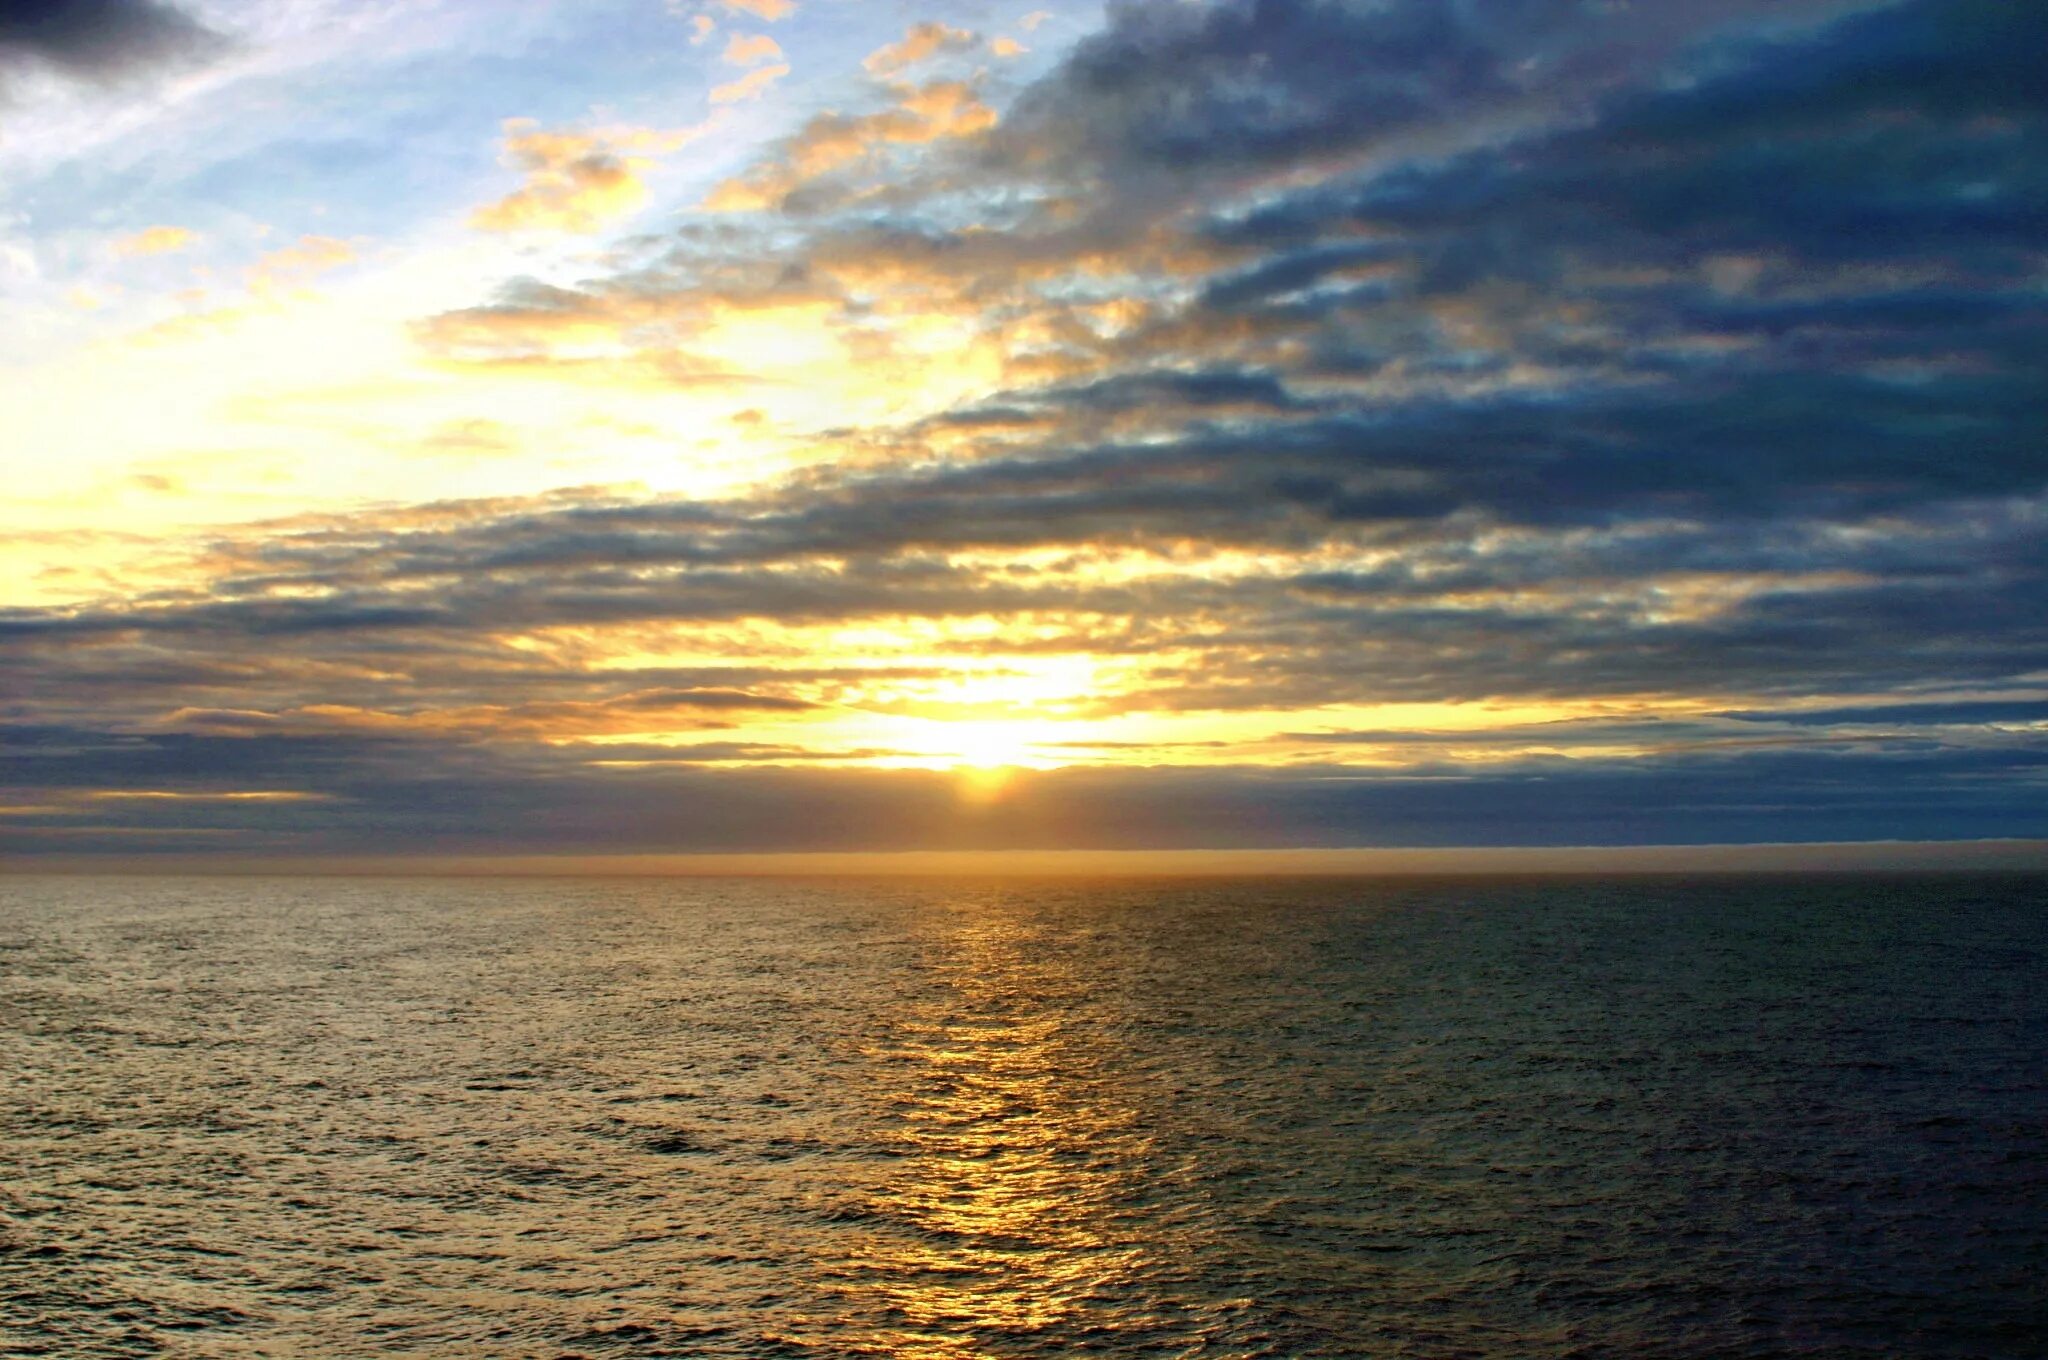 Изгиб океана. Море Горизонт. Океан Горизонт. Море Горизонт фото. Горизонт небо облака закат вода.